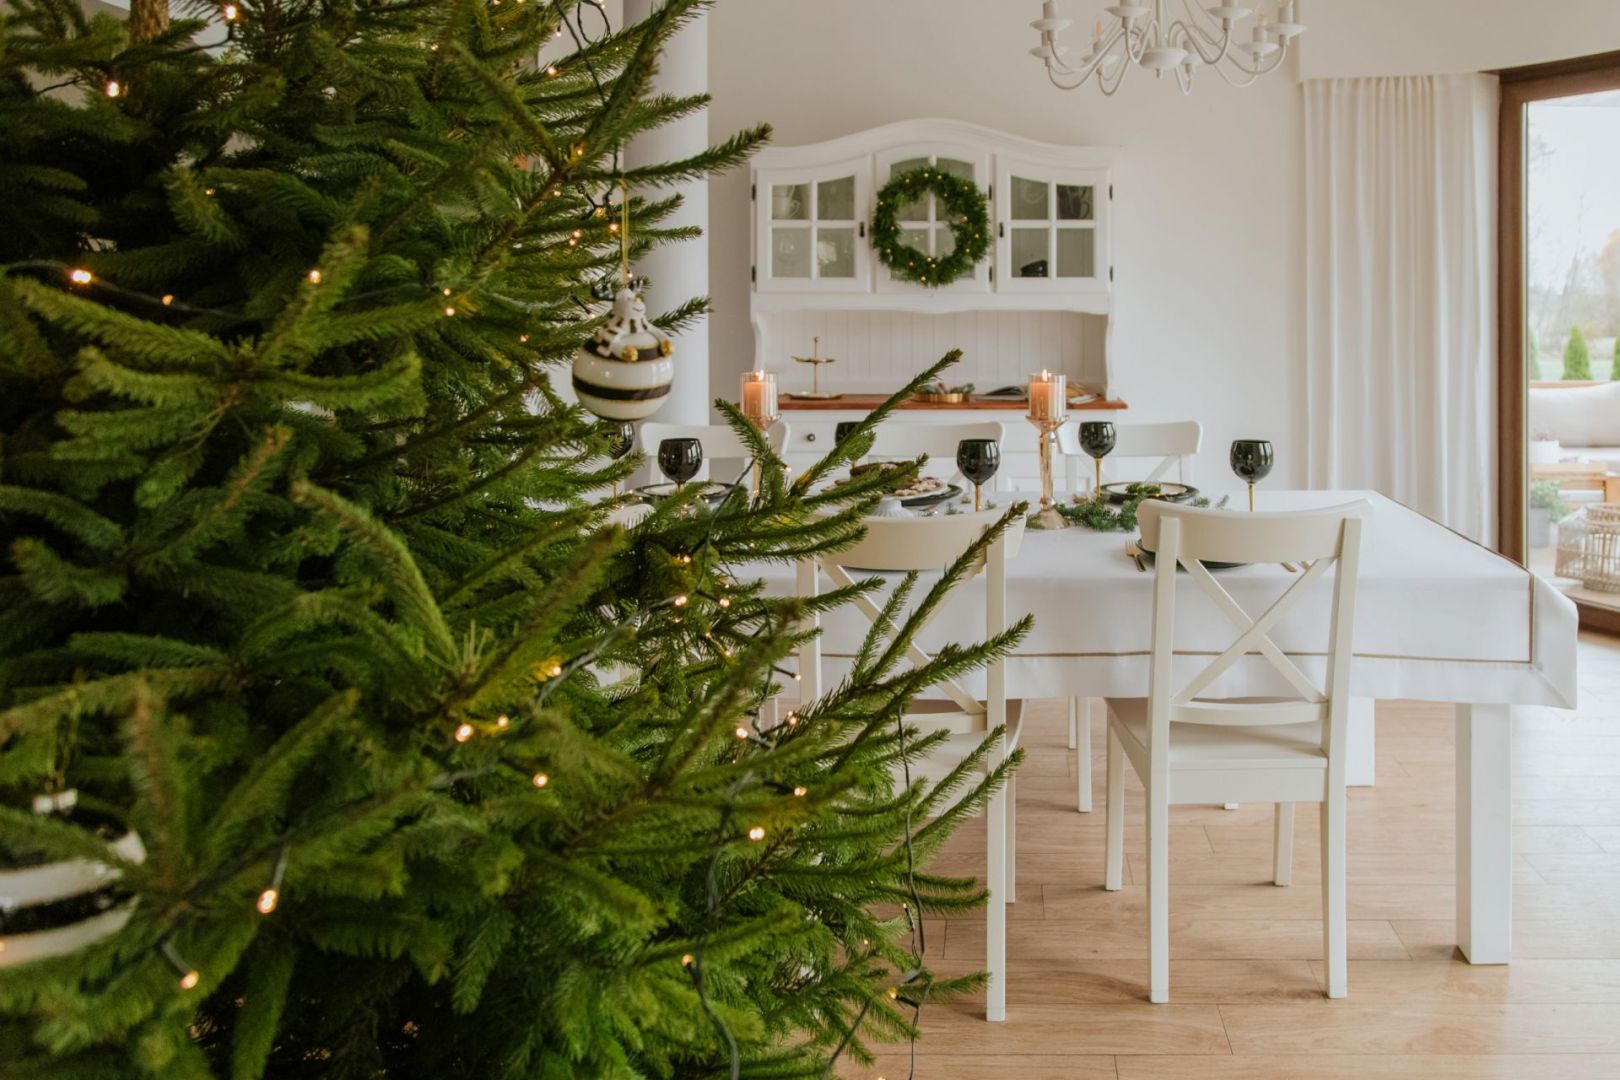 Dom na święta - Bożonarodzeniowa propozycja aranżacji domu blogerki Asi Wałęsy z @nasze.kilka.metrów. Fot. mat. prasowe home&you